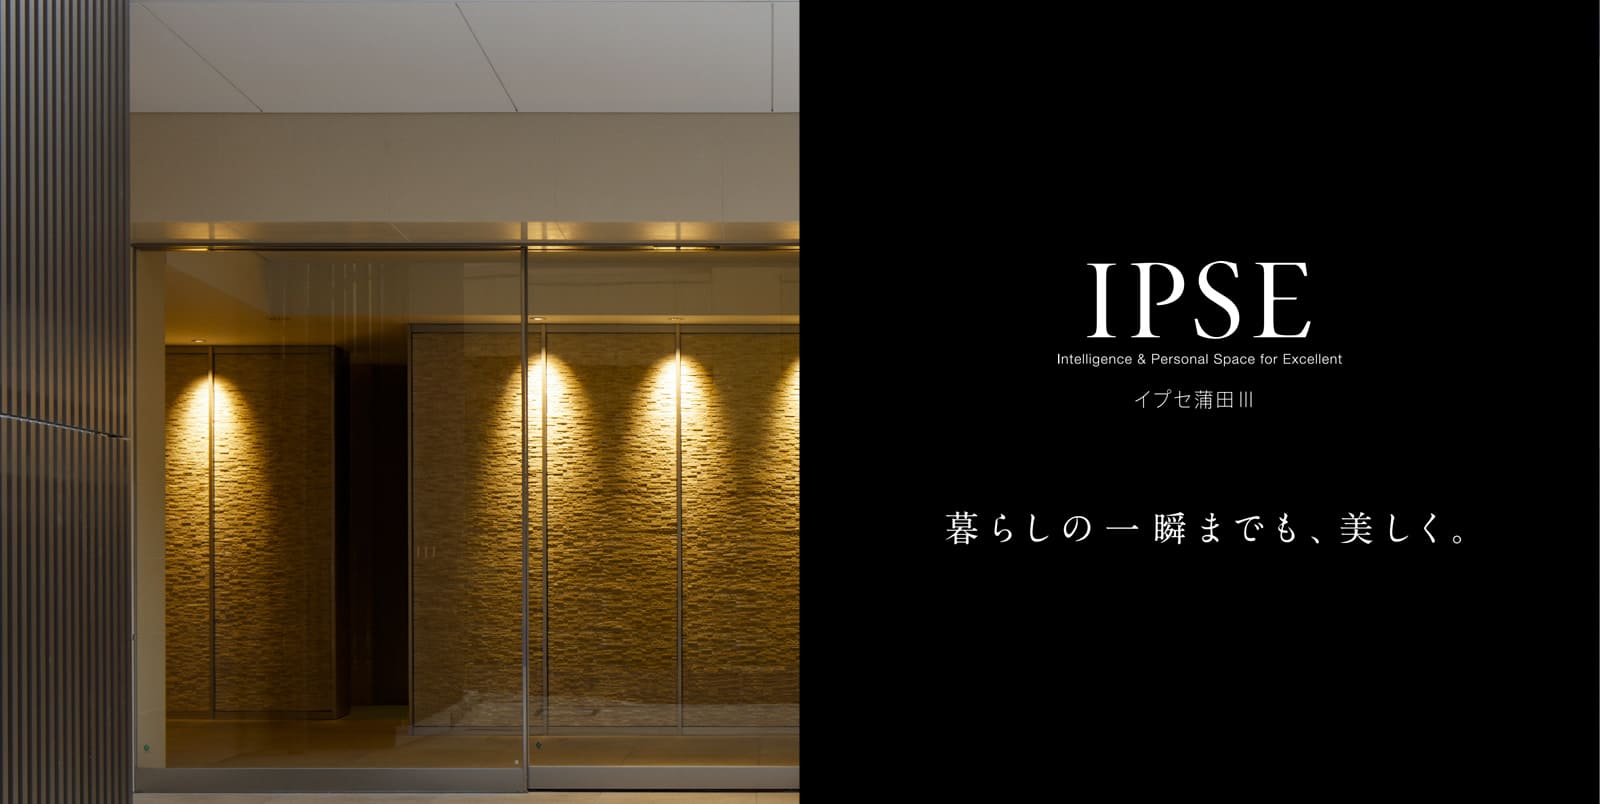 イプセ蒲田Ⅲ IPSE Intelligence & Personal Space for Excellent 暮らしの一瞬までも、美しく